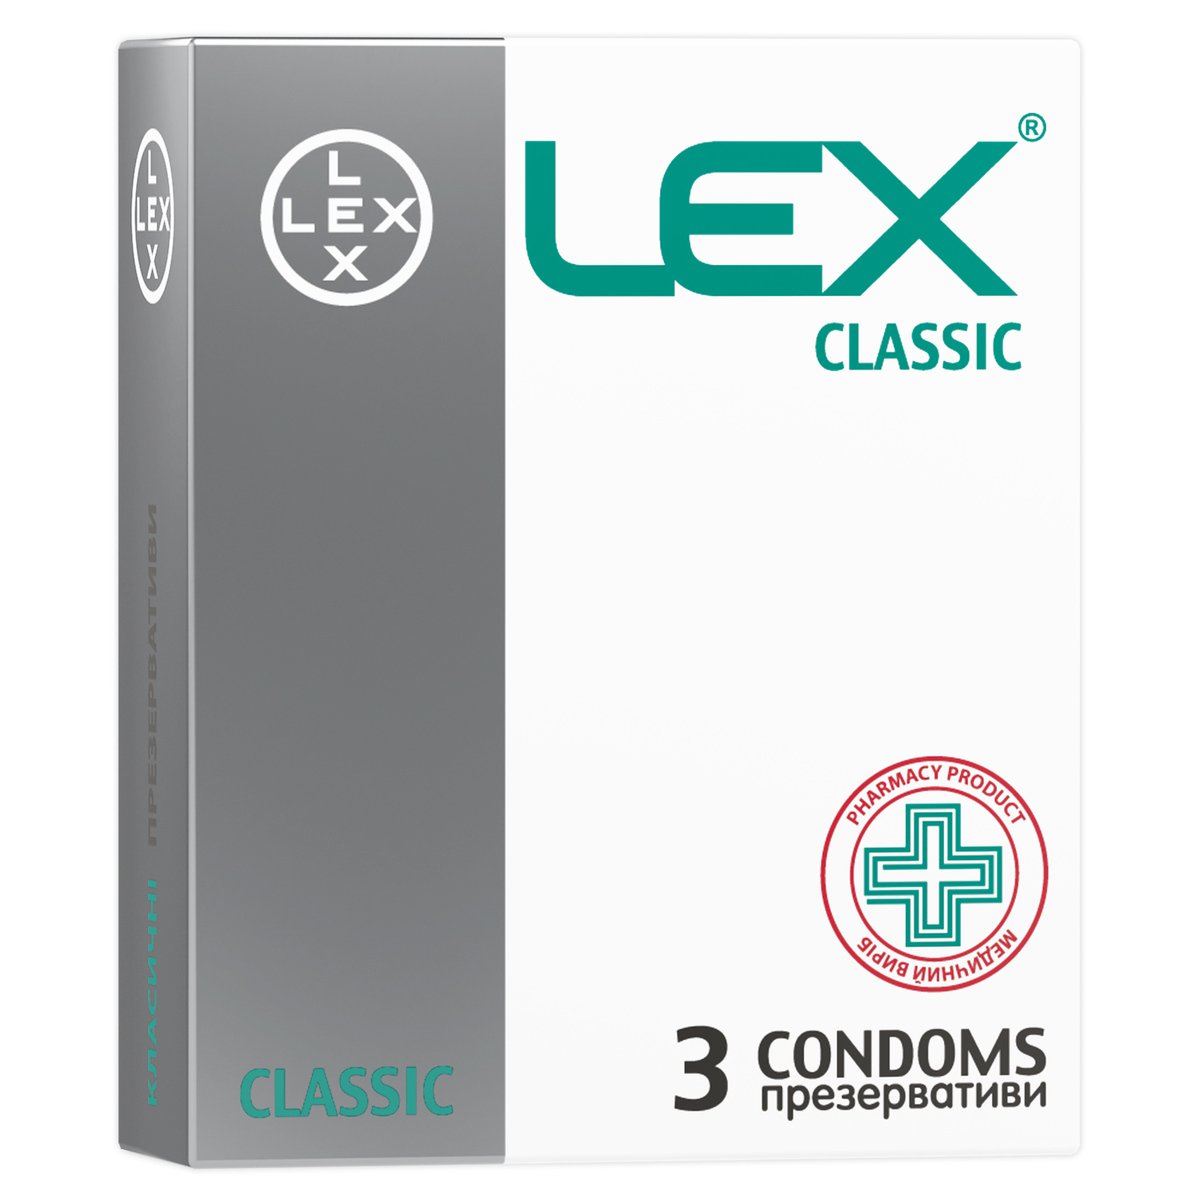 Презервативи Lex Classic класичні, 3 шт. (LEX/Classic/3) - фото 1